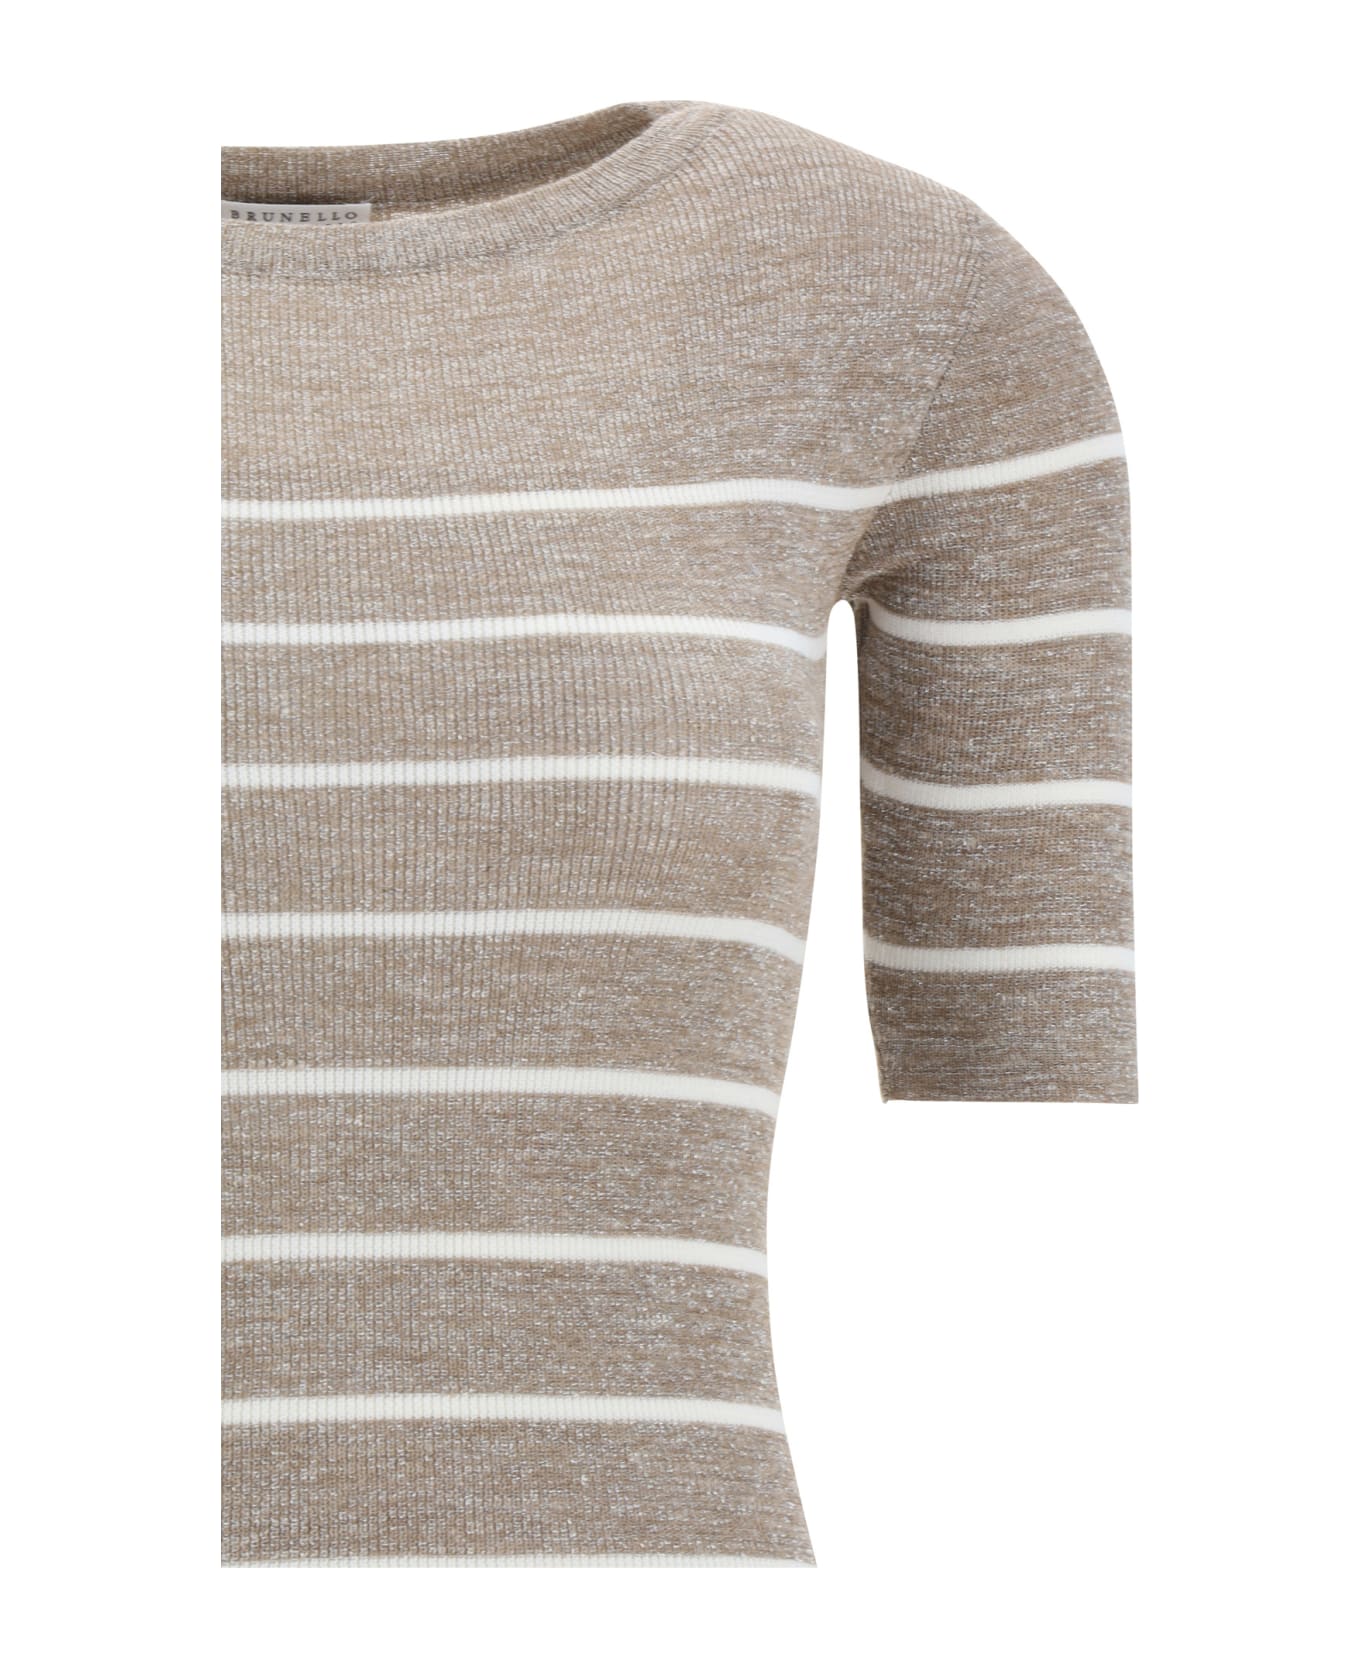 Brunello Cucinelli Lurex Striped Sweater - Cip31 ニットウェア